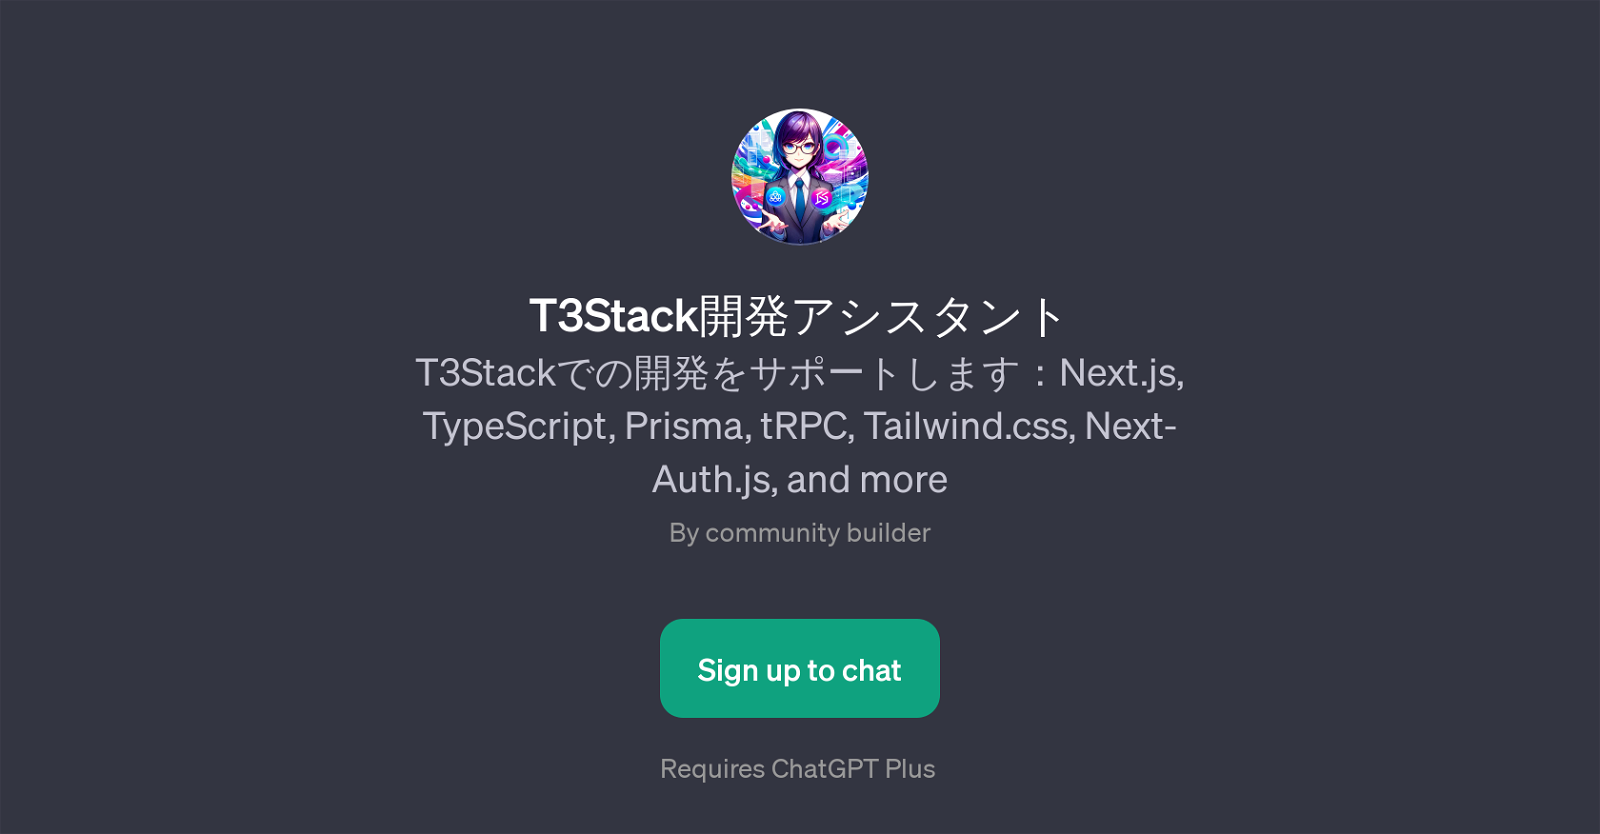 T3Stack website